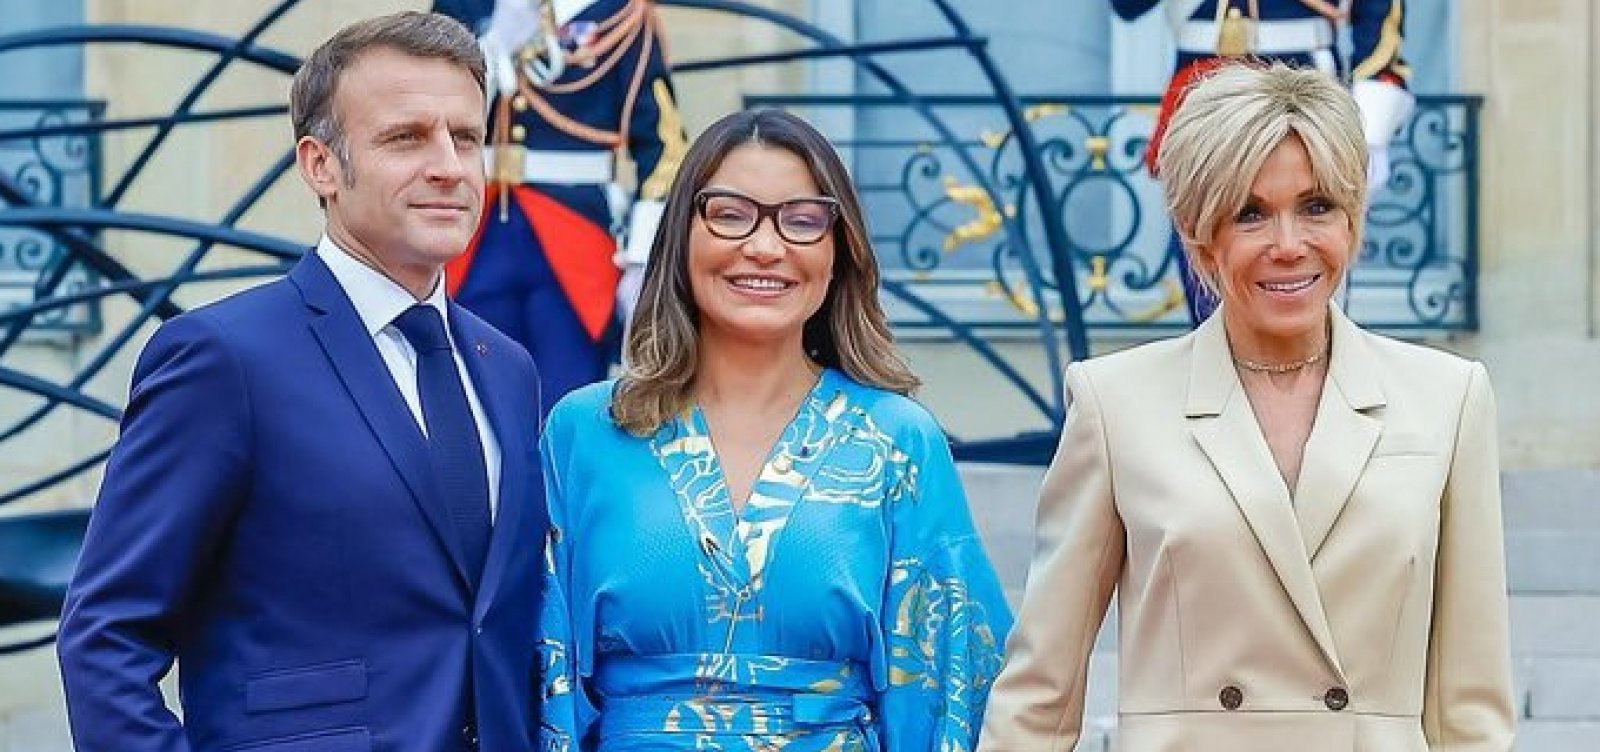 Representante do governo brasileiro, Janja é recepcionada por Macron e esposa em Paris